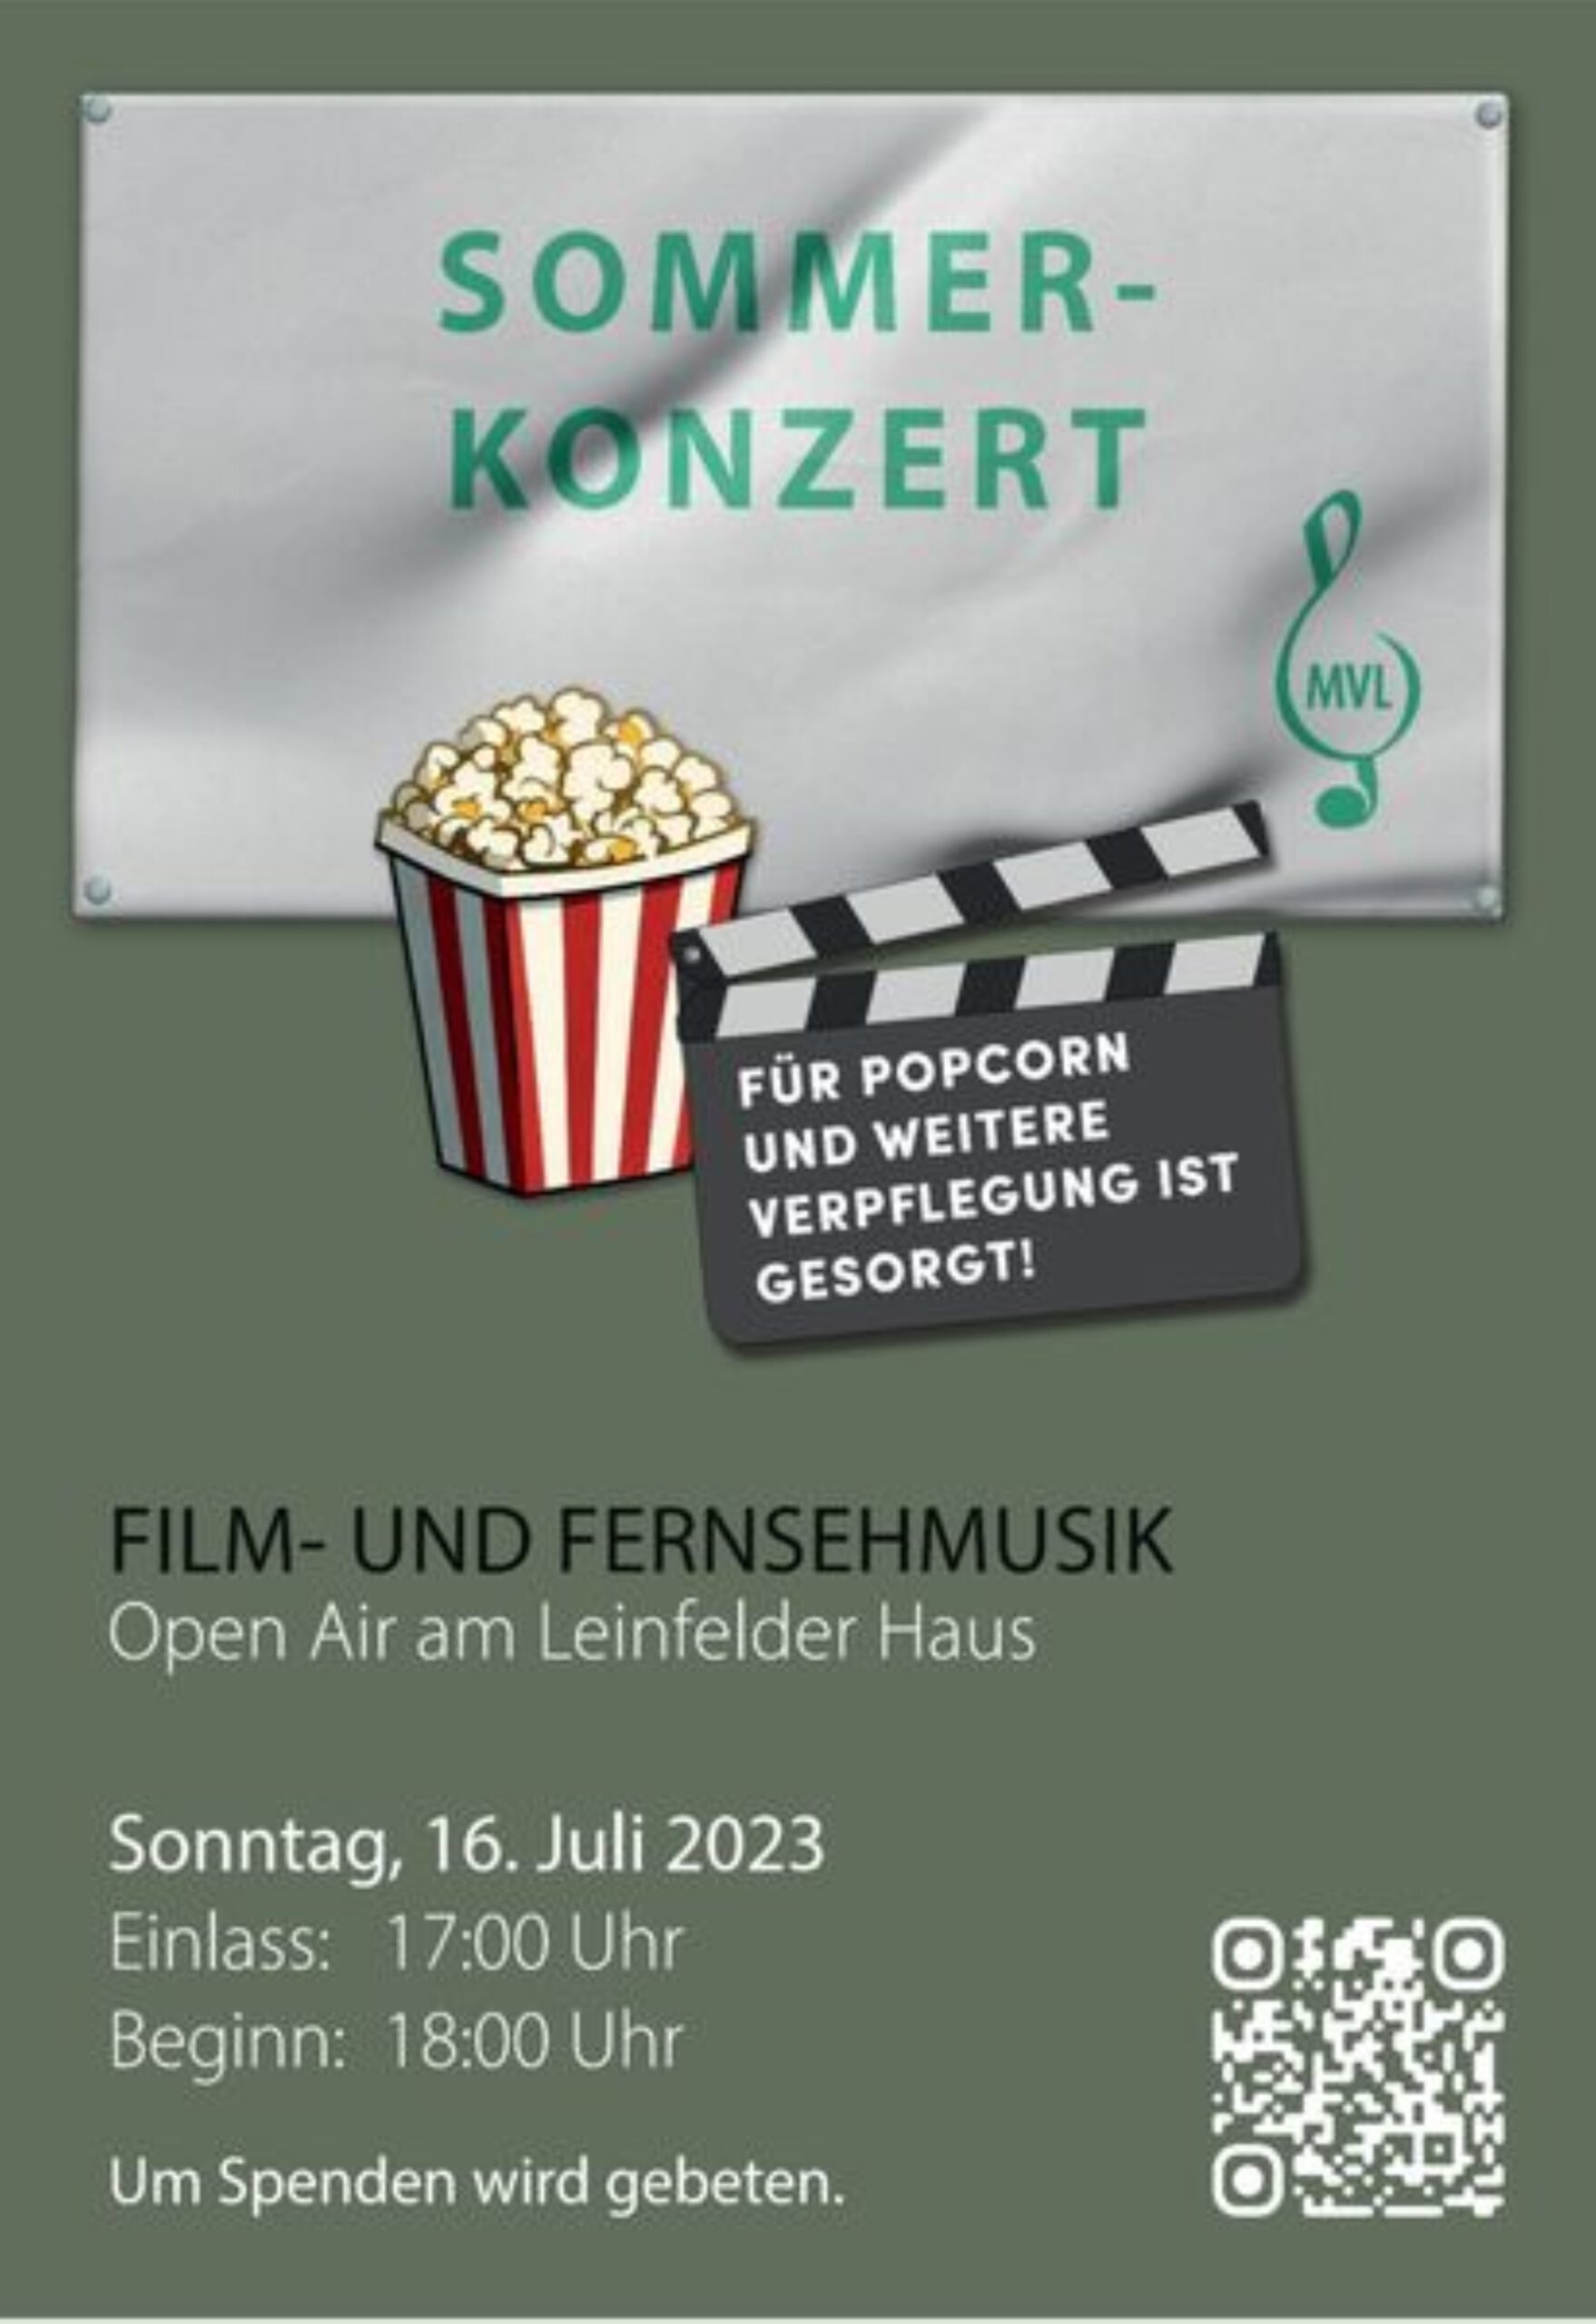 Open-Air-Konzert "Film- und Fernsehmusik" am Sonntag, 16. Juli am Leinfelder Haus